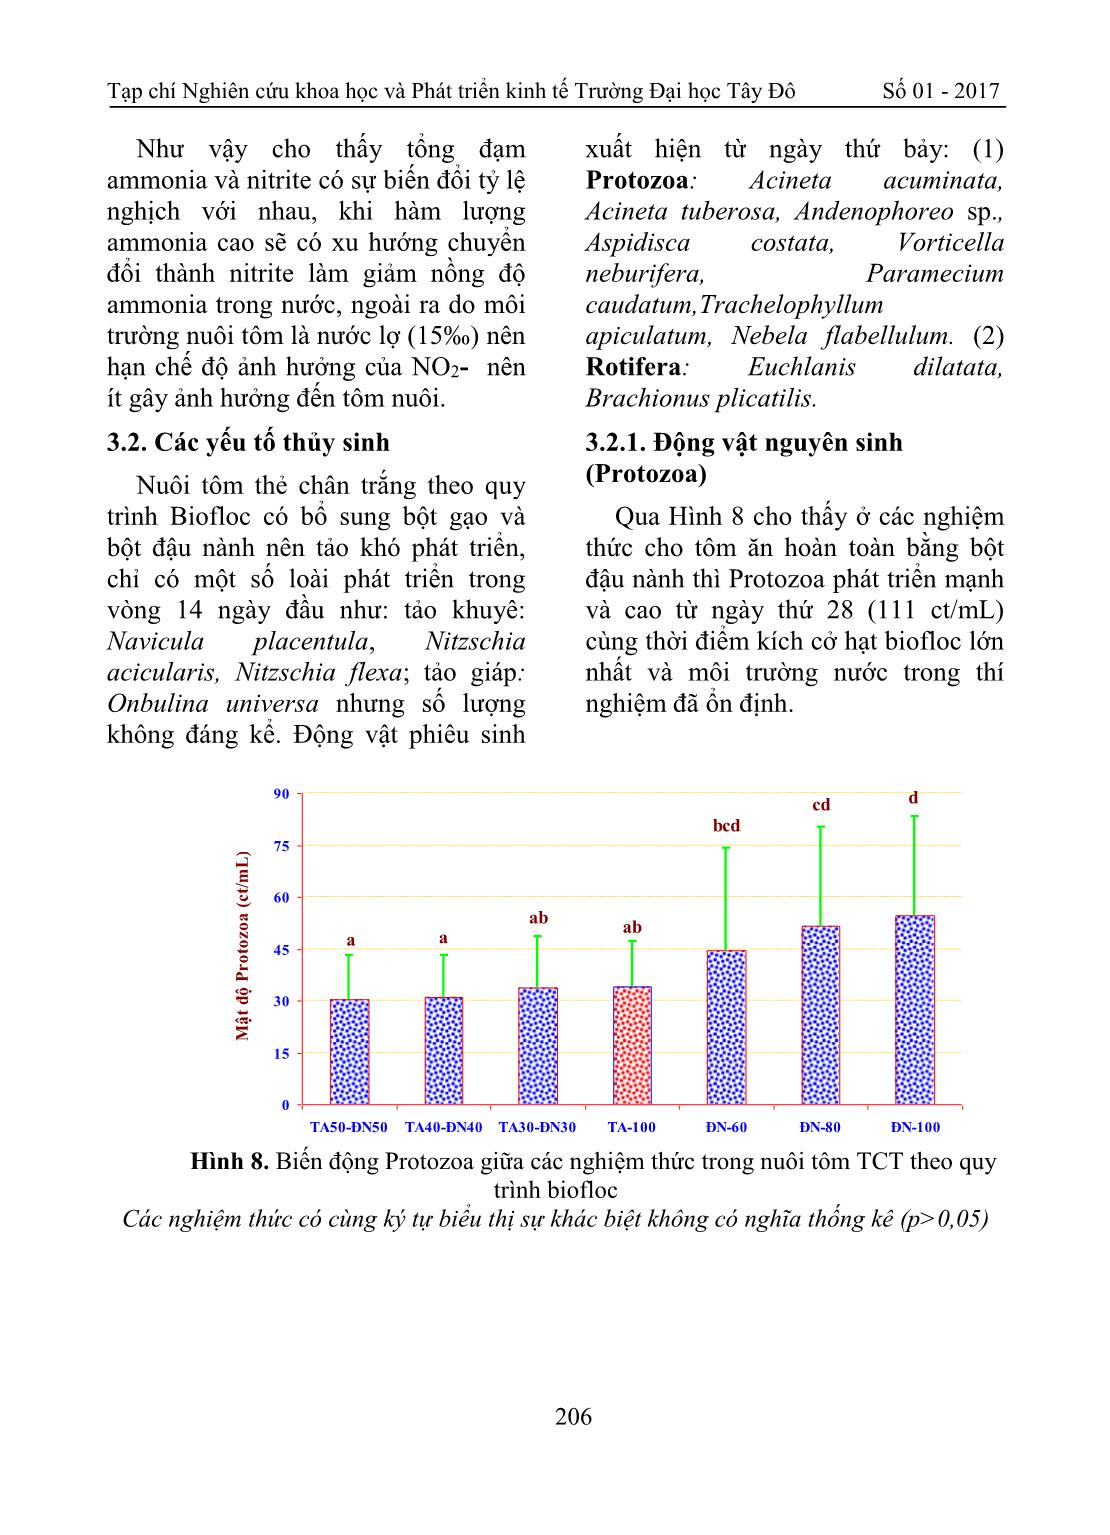 Đánh giá khả năng bổ sung bột đậu nành trong nuôi tôm thẻ chân trắng theo quy trình biofloc trang 9